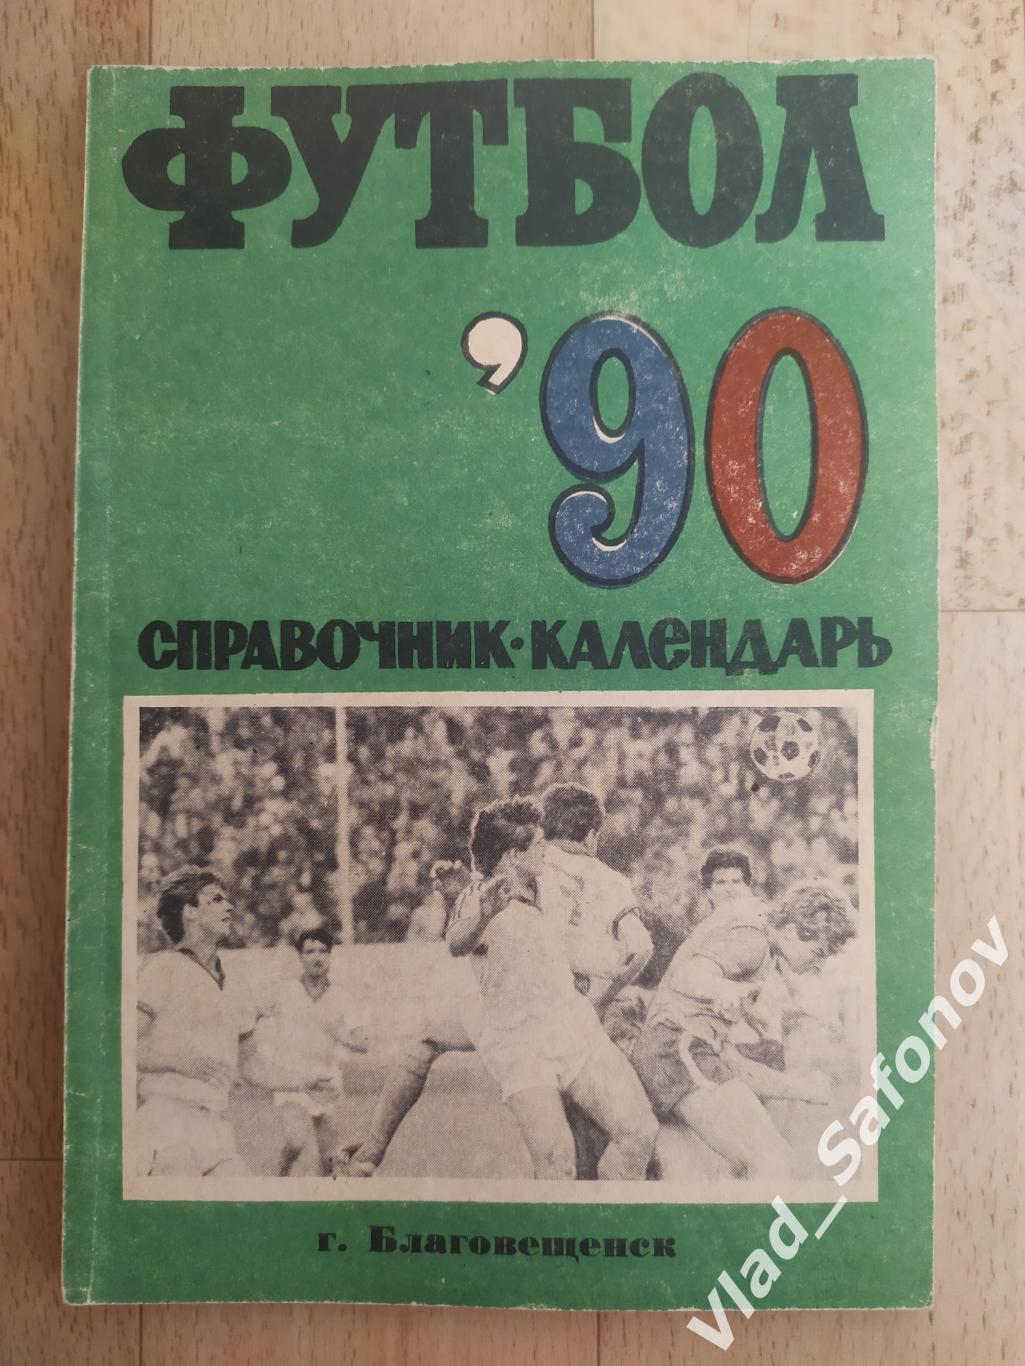 Календарь справочник. Амур(Благовещенск) 1990.